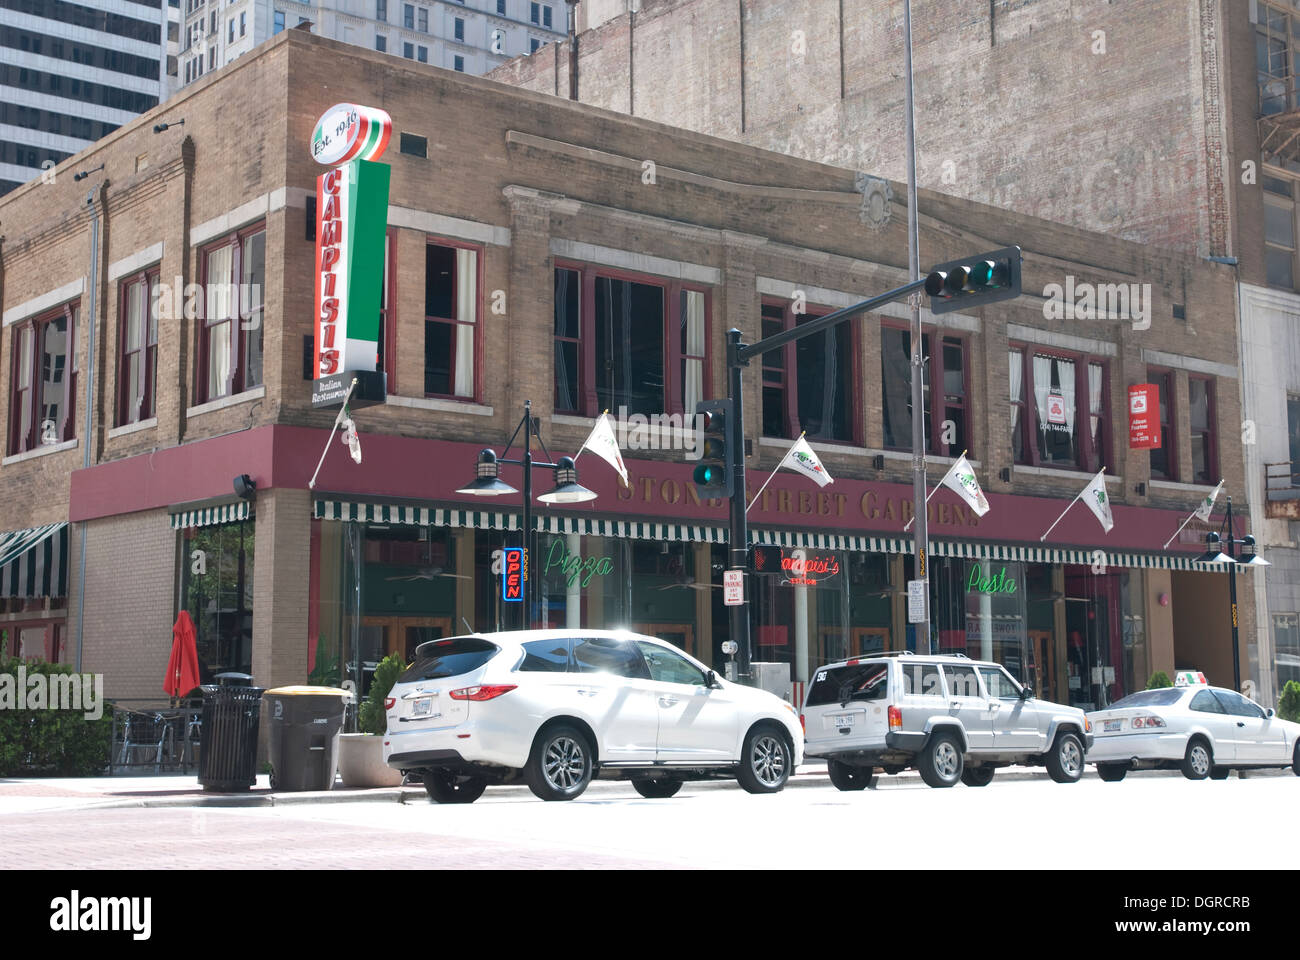 Blanco autos estacionados fuera de Campisi's es un restaurante italiano en el centro de Dallas, Texas. Foto de stock